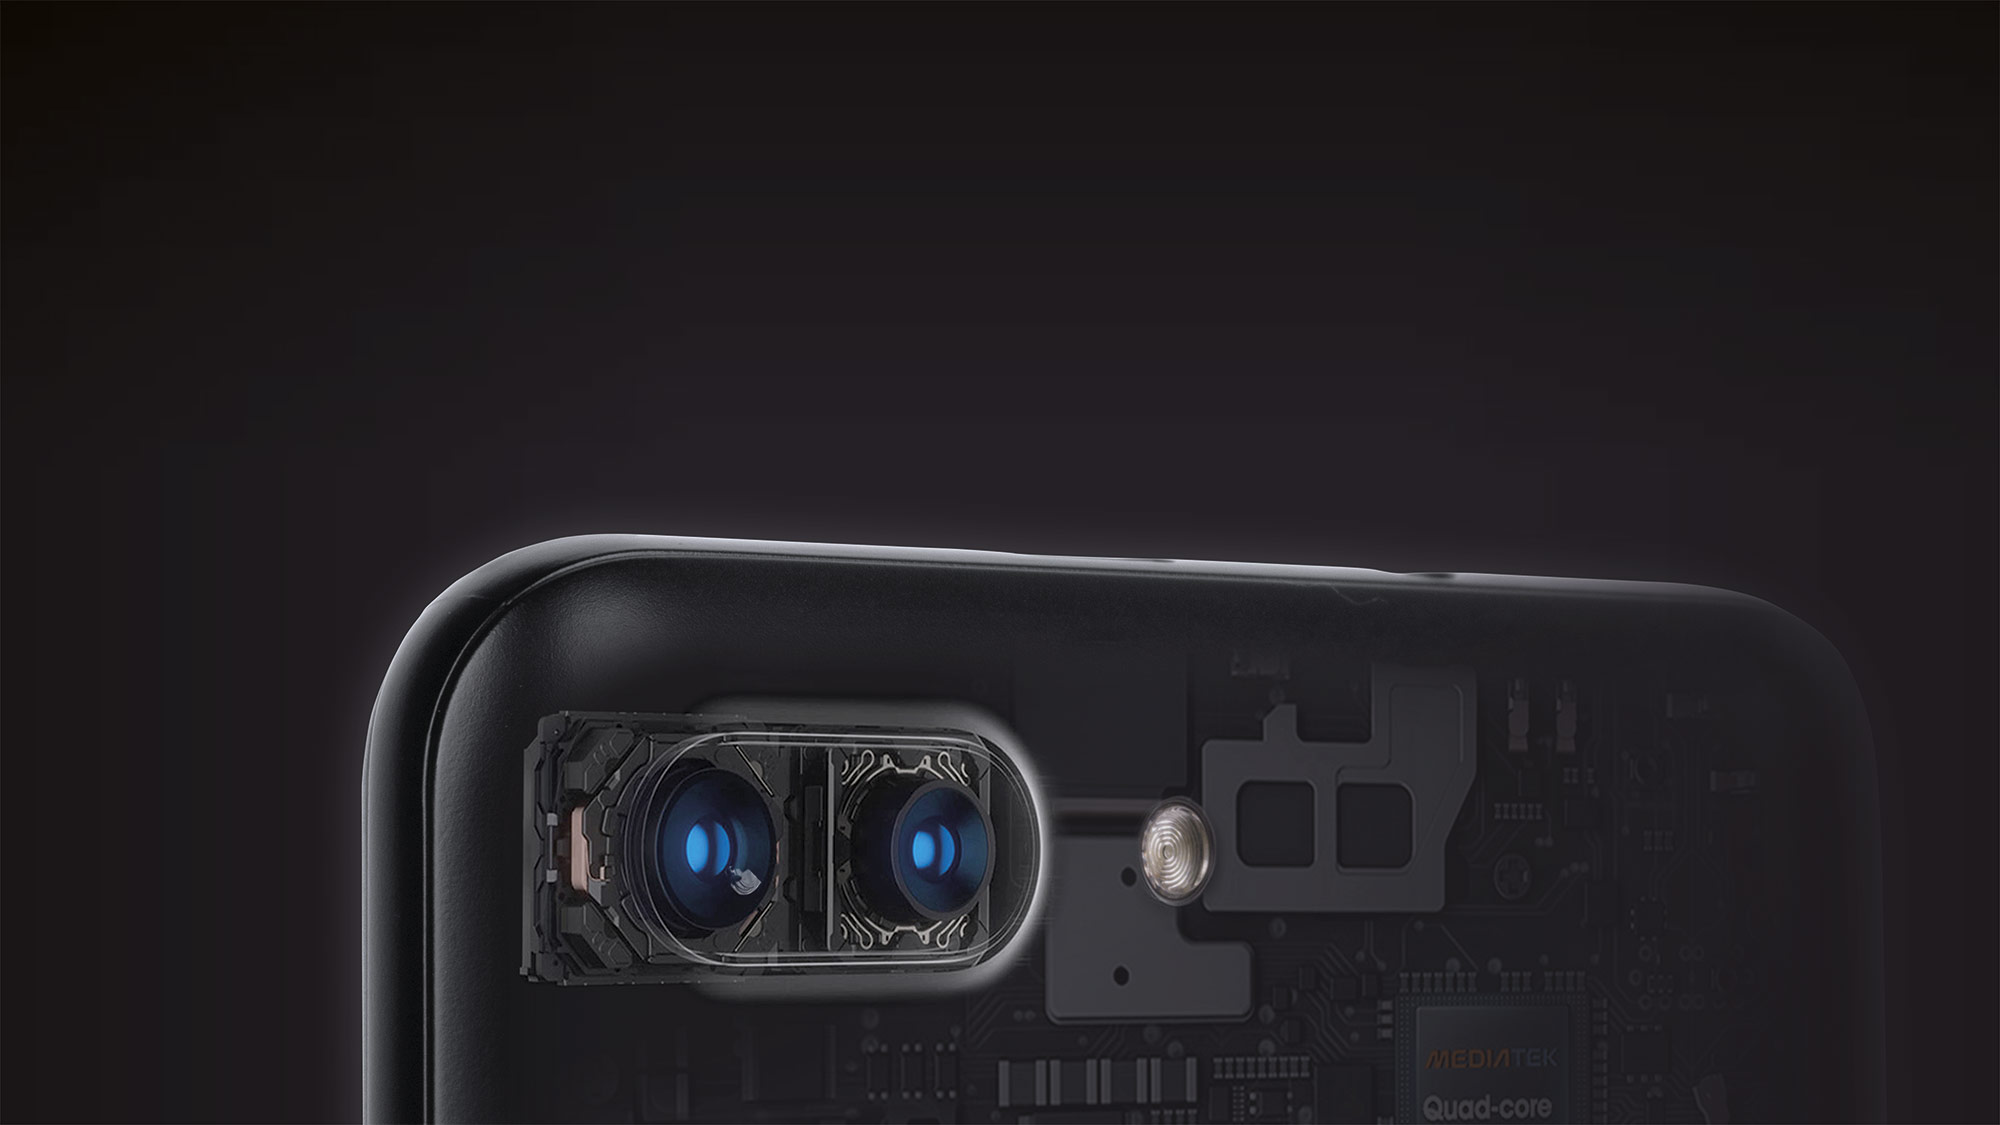 Oprócz kamery 8 Mpx i diody doświetlającej, tył smartfona Kruger&Matz FLOW 6 kryje dodatkową kamerę 0,3 Mpx, dzięki której uzyskasz doskonałe efekty rozmywania tła. Wykorzystaj możliwości swojego telefonu i uwieczniaj wszystkie wyjątkowe momenty w naprawdę wysokiej jakości. 